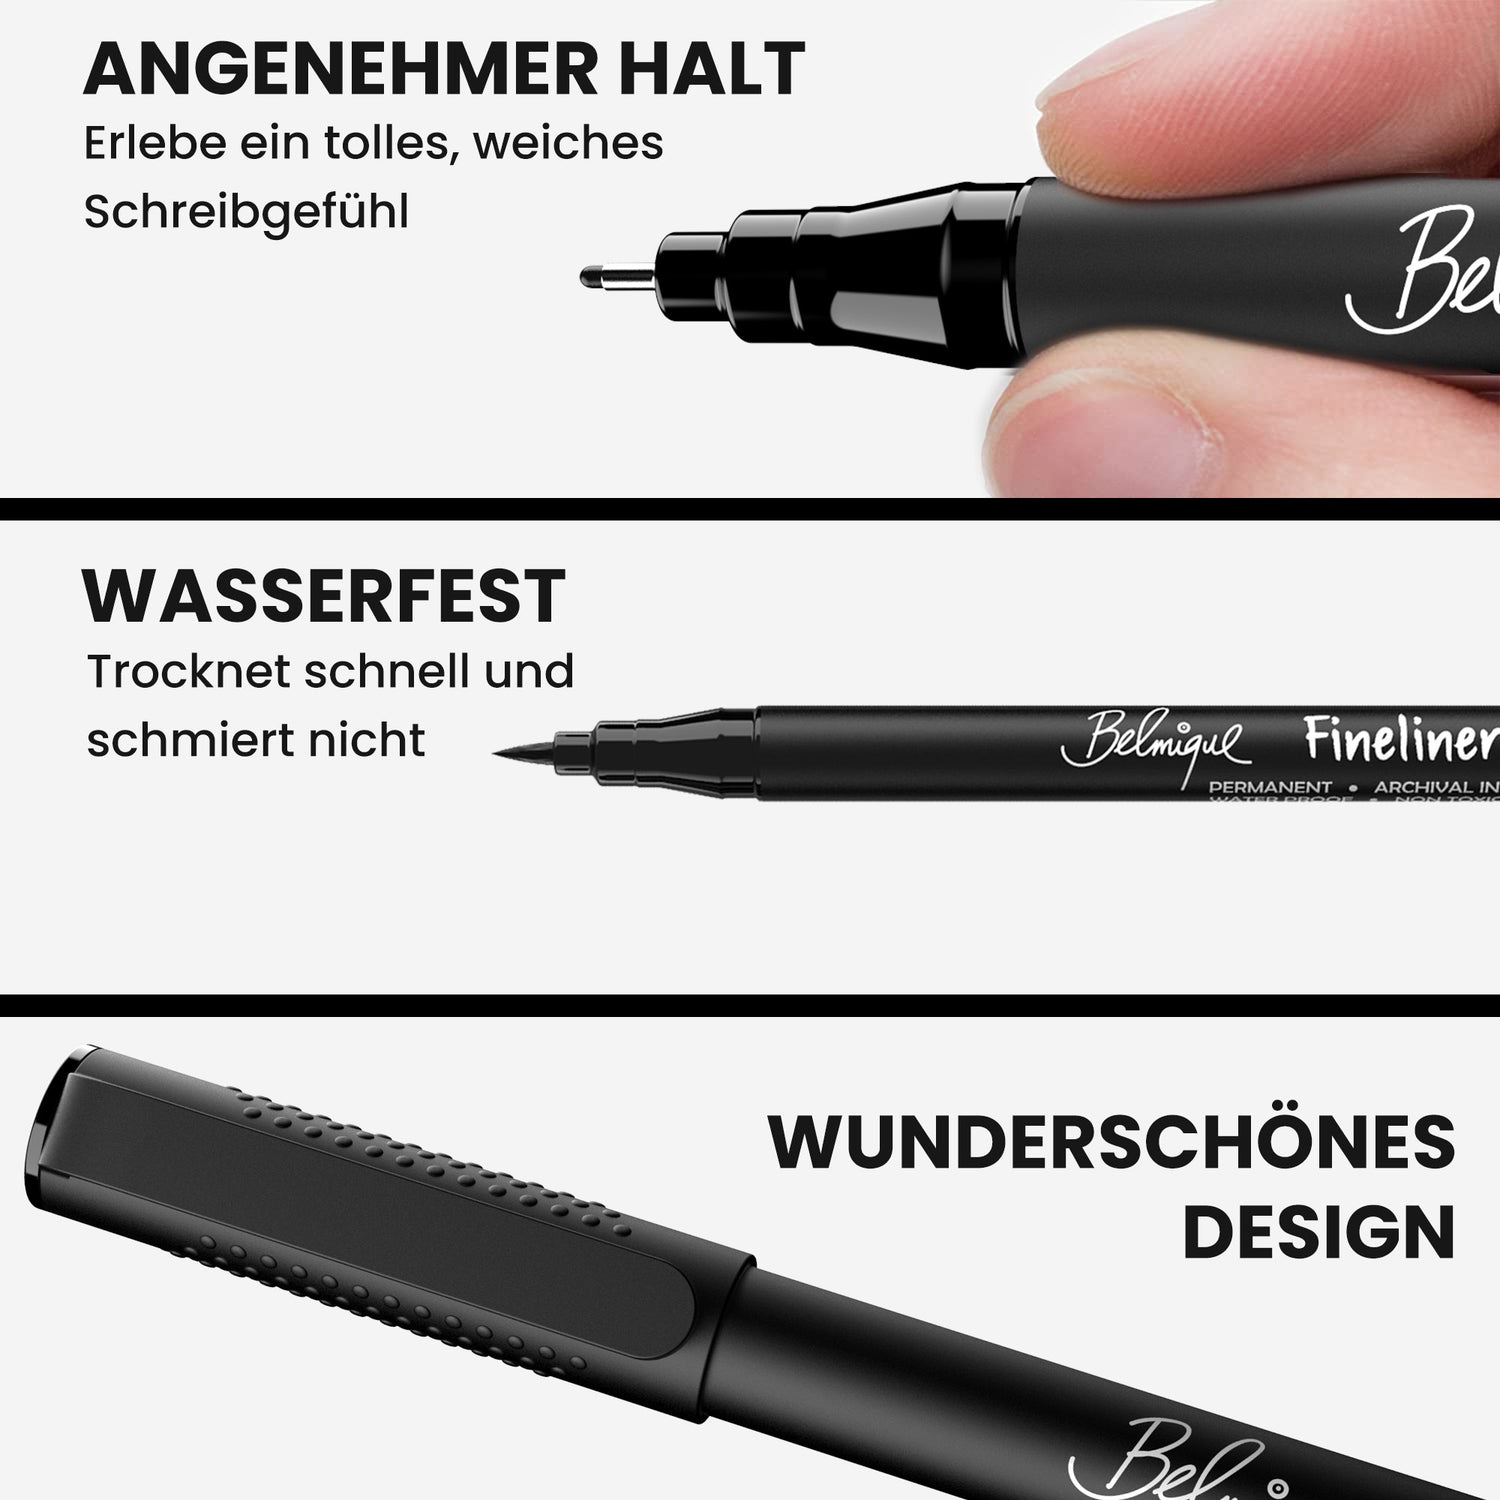 10 Handlettering Stifte und Zeichenstifte - inkl. 2 Brush Pens – Belmique